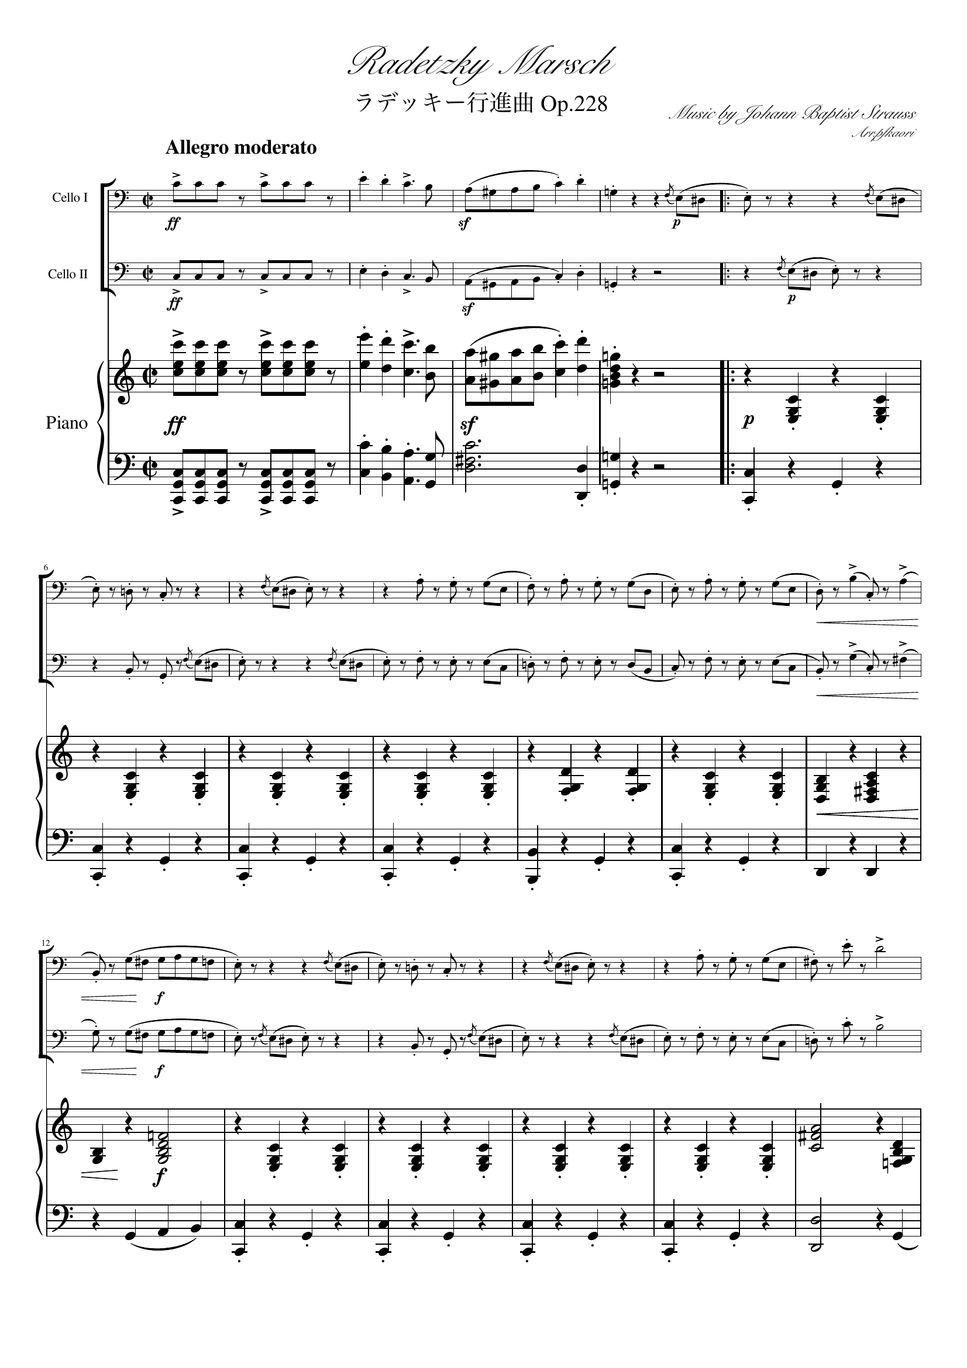 ヨハンシュトラウス1世 - ラデッキー行進曲 (C・ピアノトリオ/チェロデュオ) by pfkaori